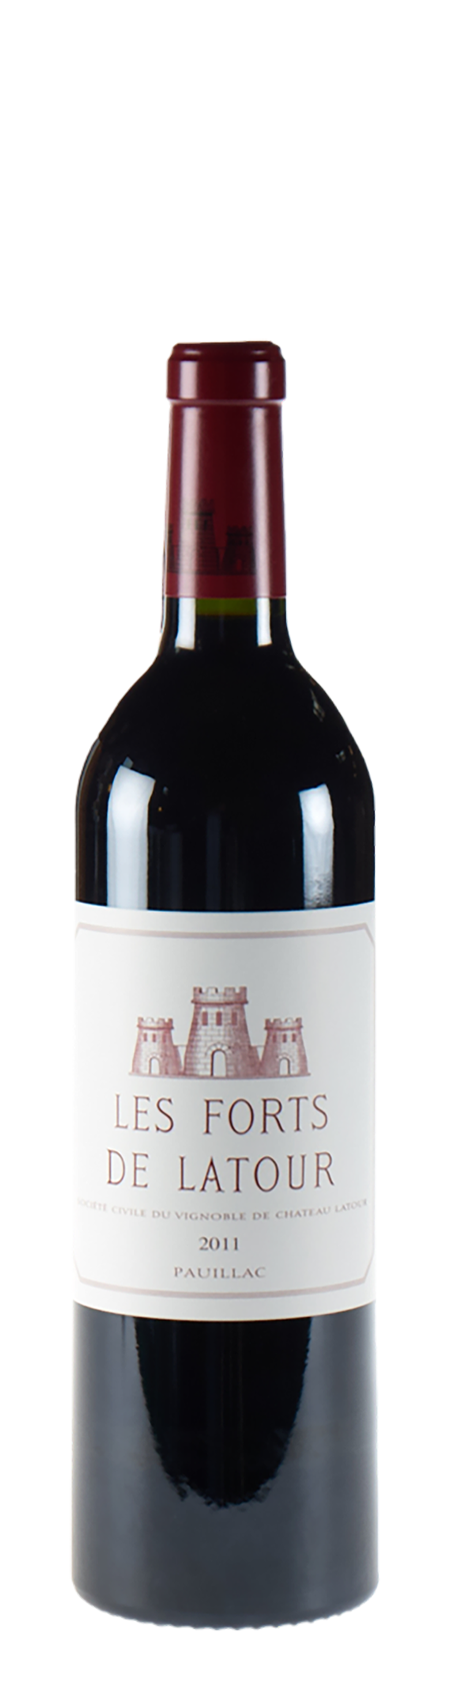 Les Forts de Latour 2ème vin de Latour 2011